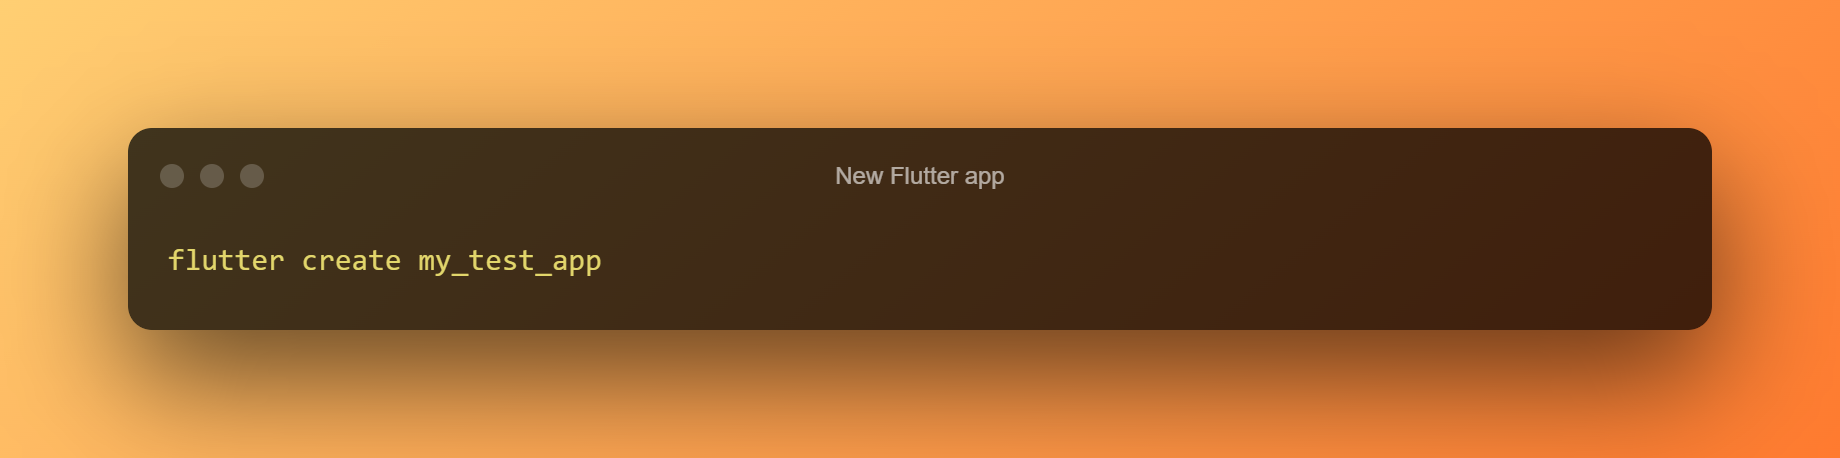 New Flutter App